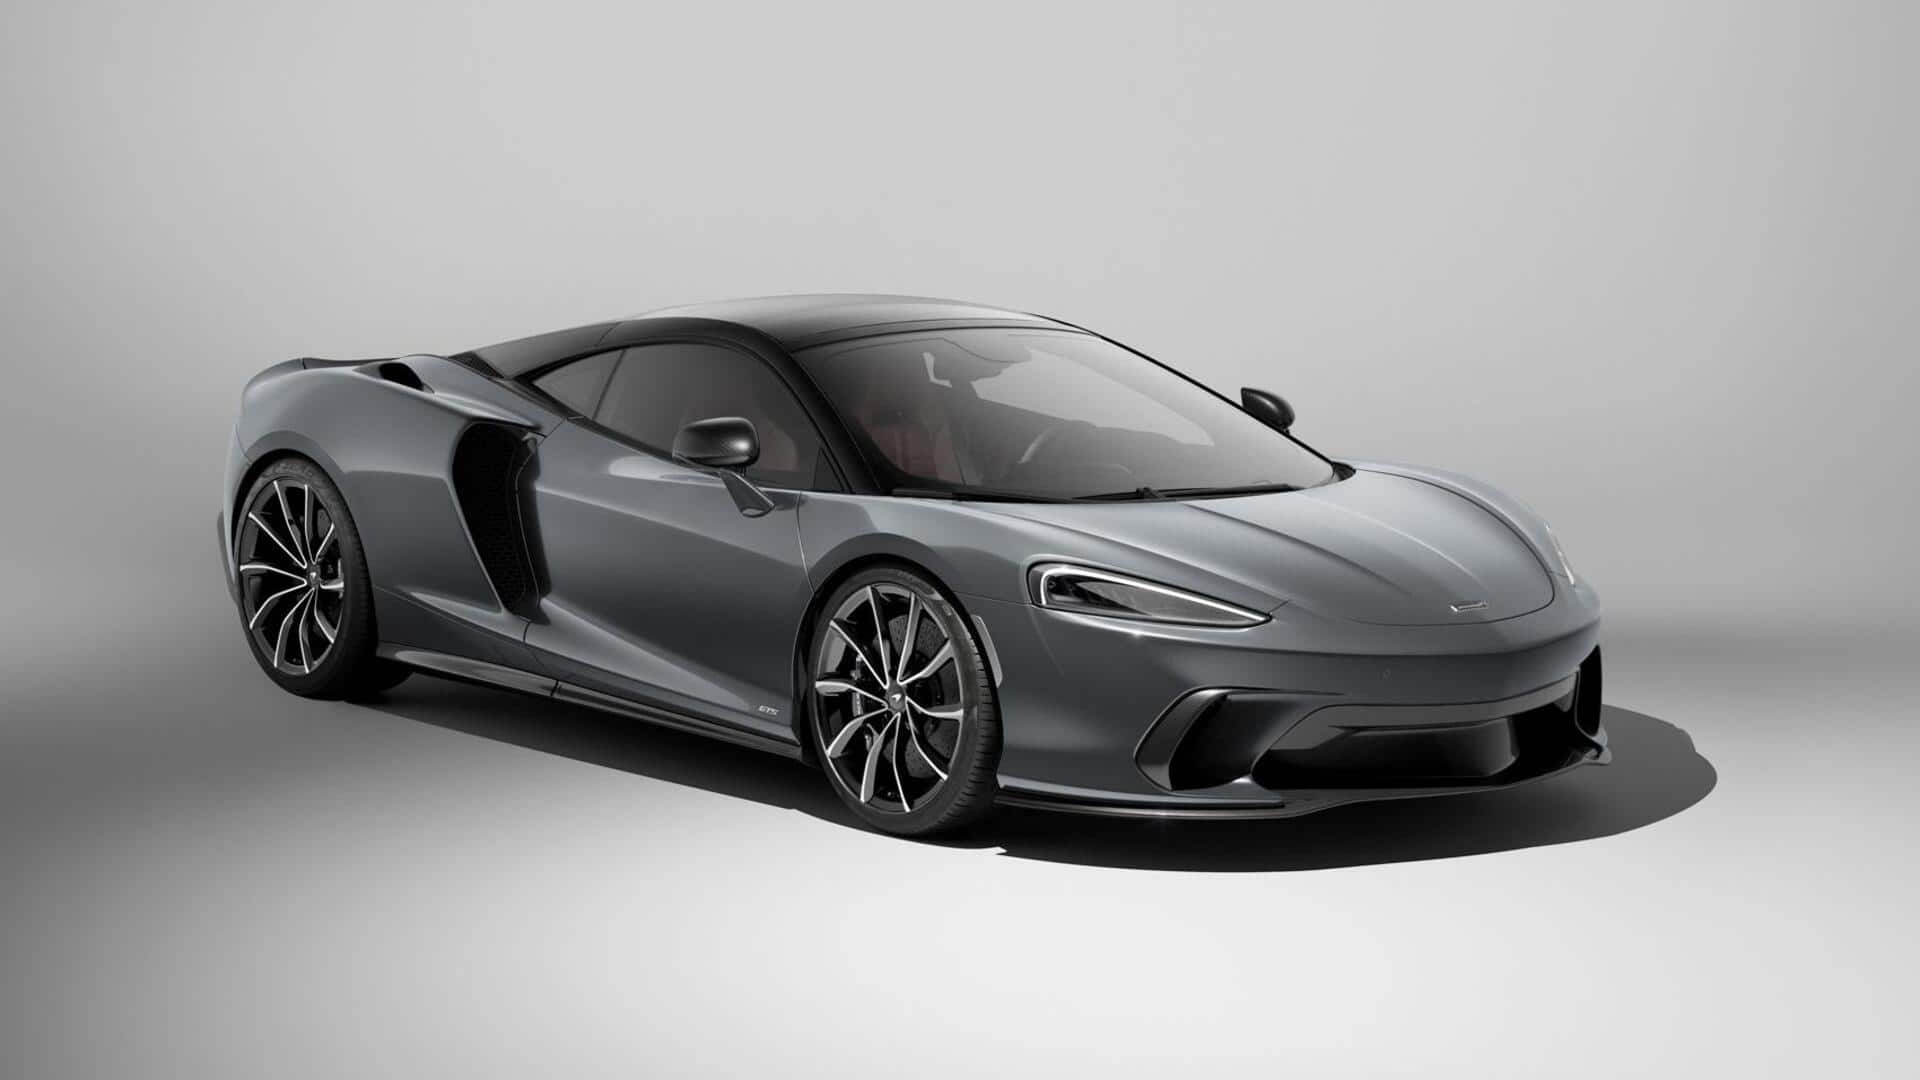 McLaren GTS revealed with improved V8 engine, aerodynamic adjustments